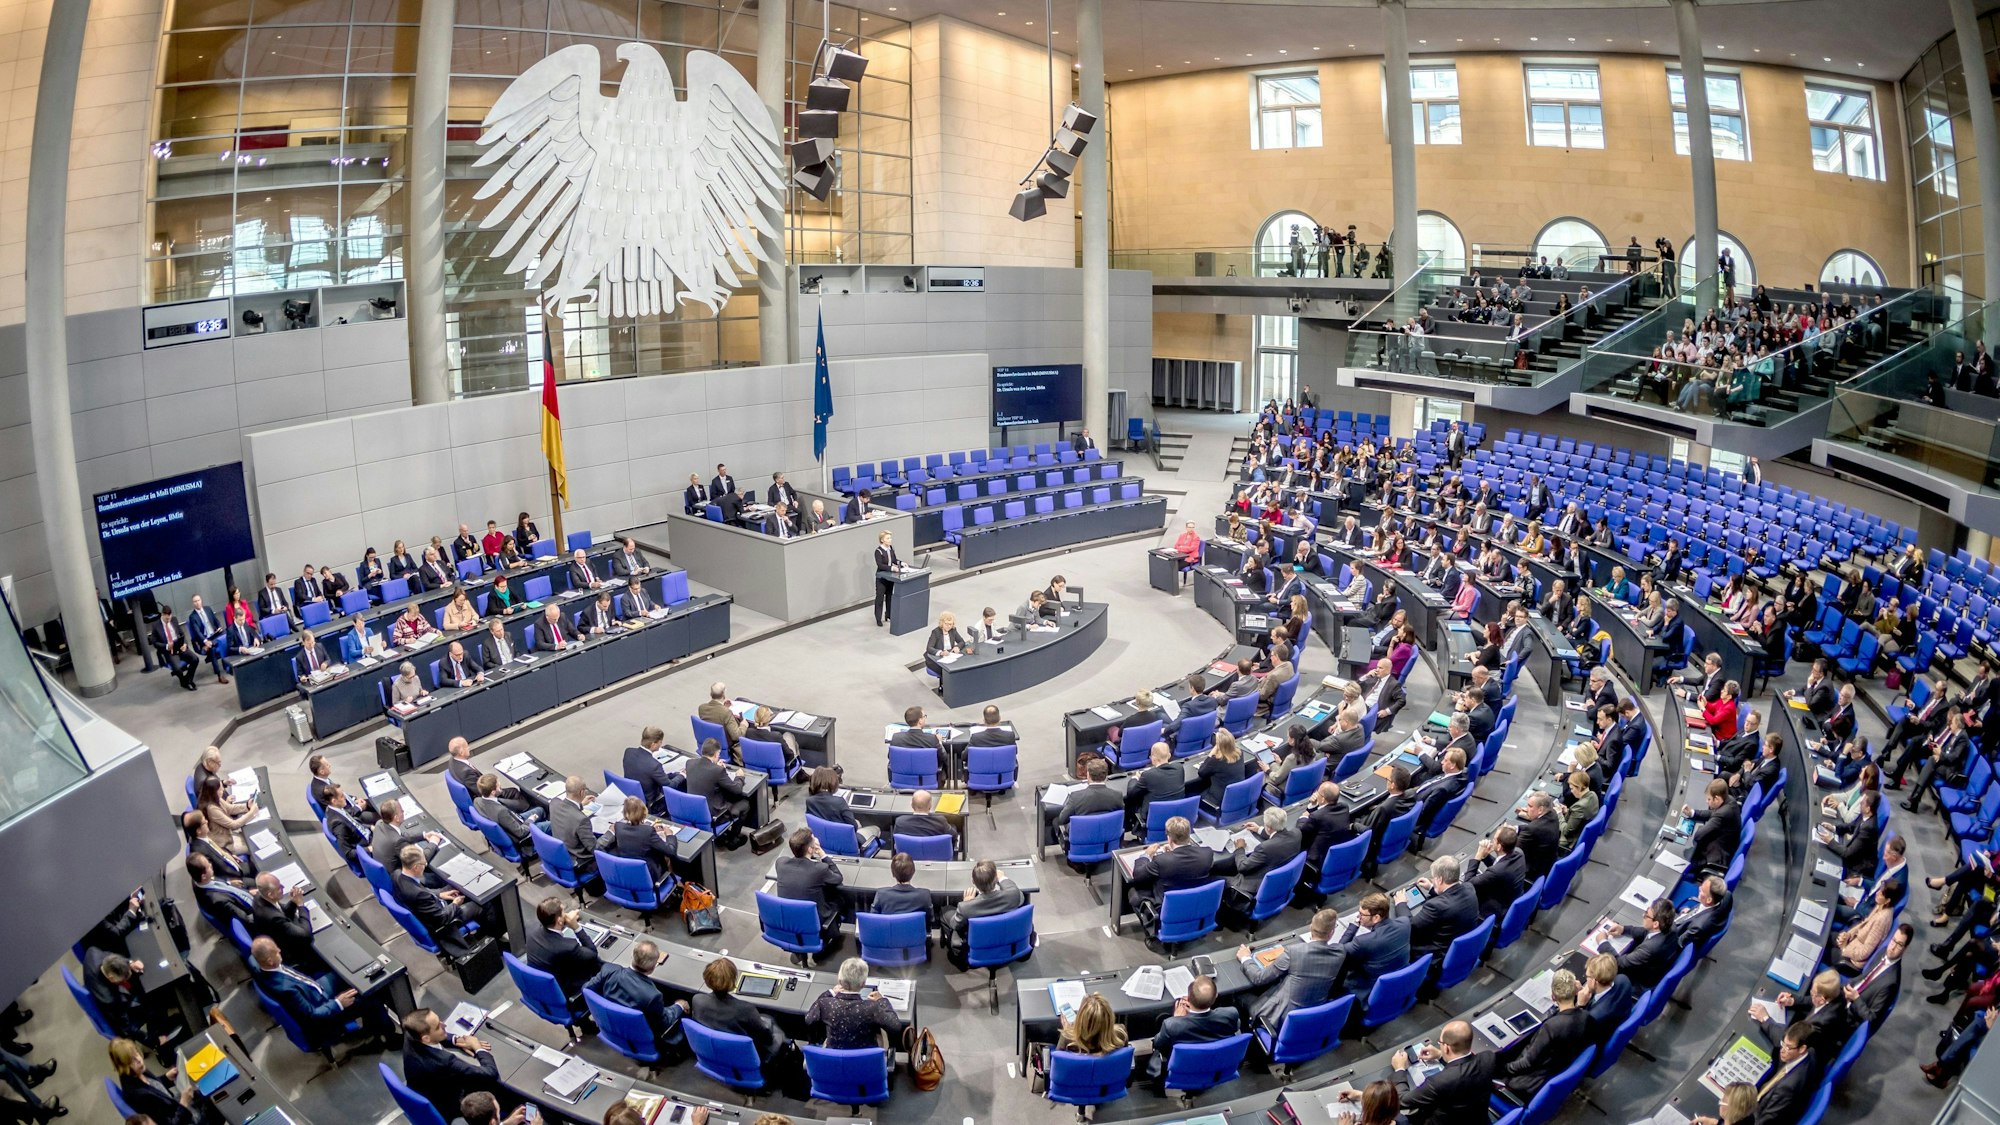 Der Plenarsaal während einer Sitzung des Deutschen Bundestages